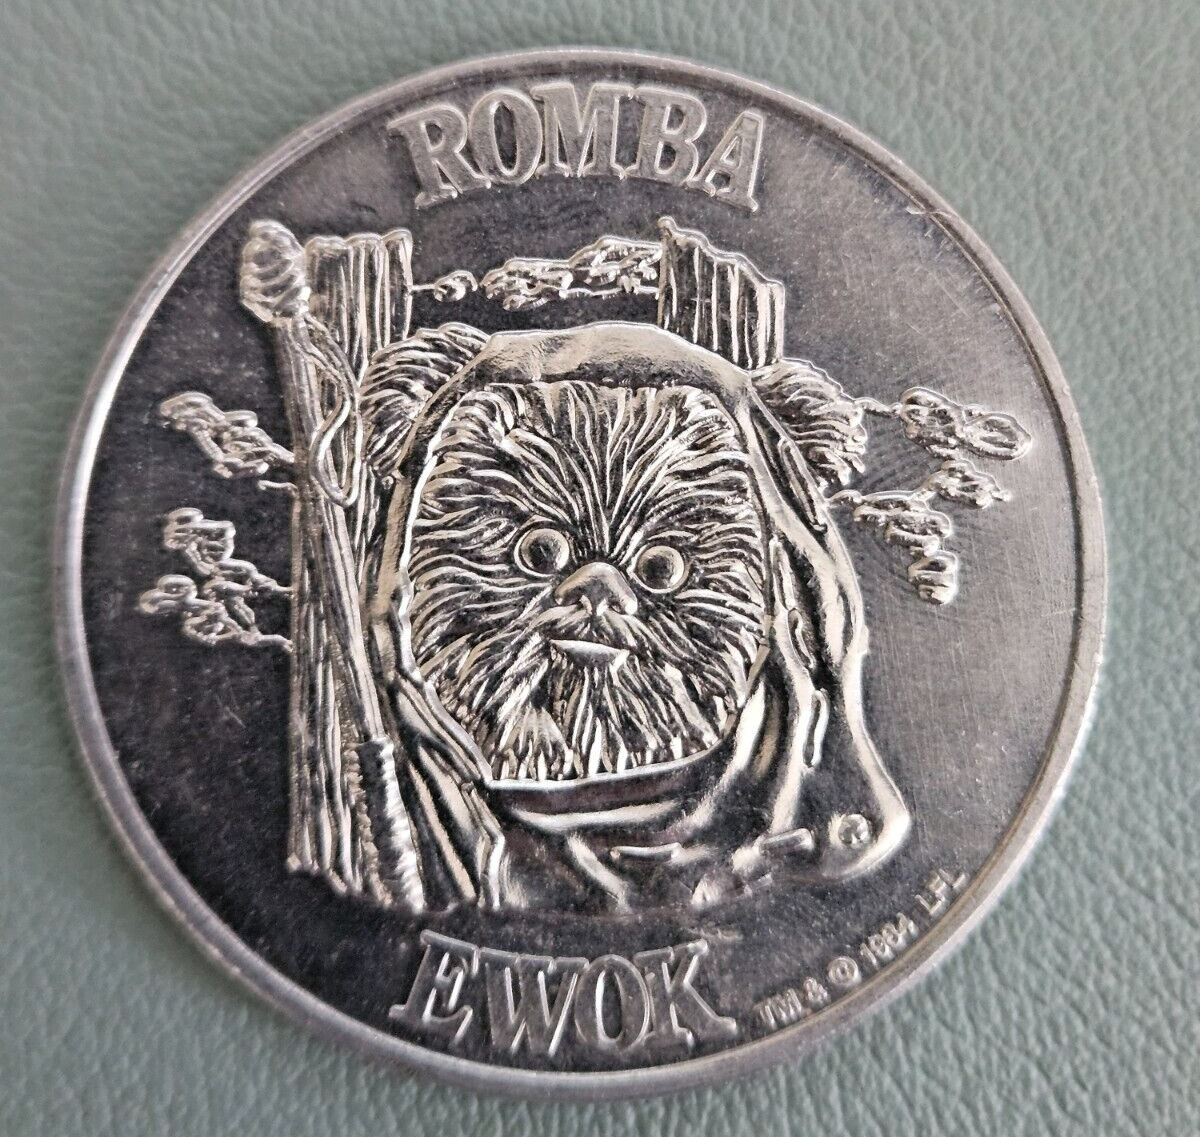 Star Wars 1984 Romba - Ewok coin